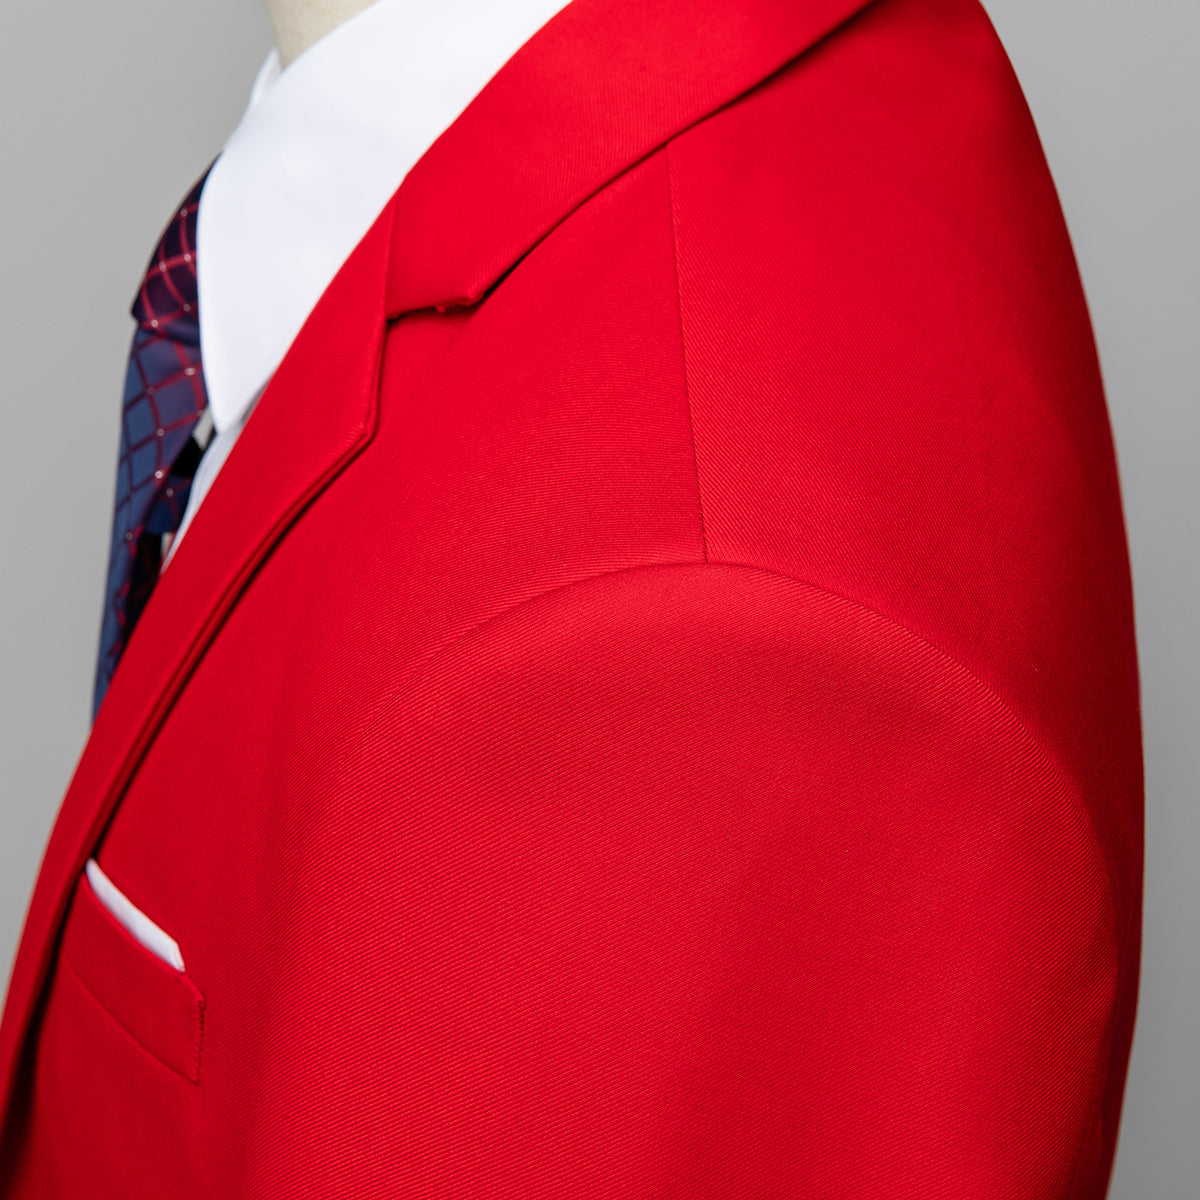 Men's Two-Button Back Slit Lapel Collar 3-Piece Suit Red